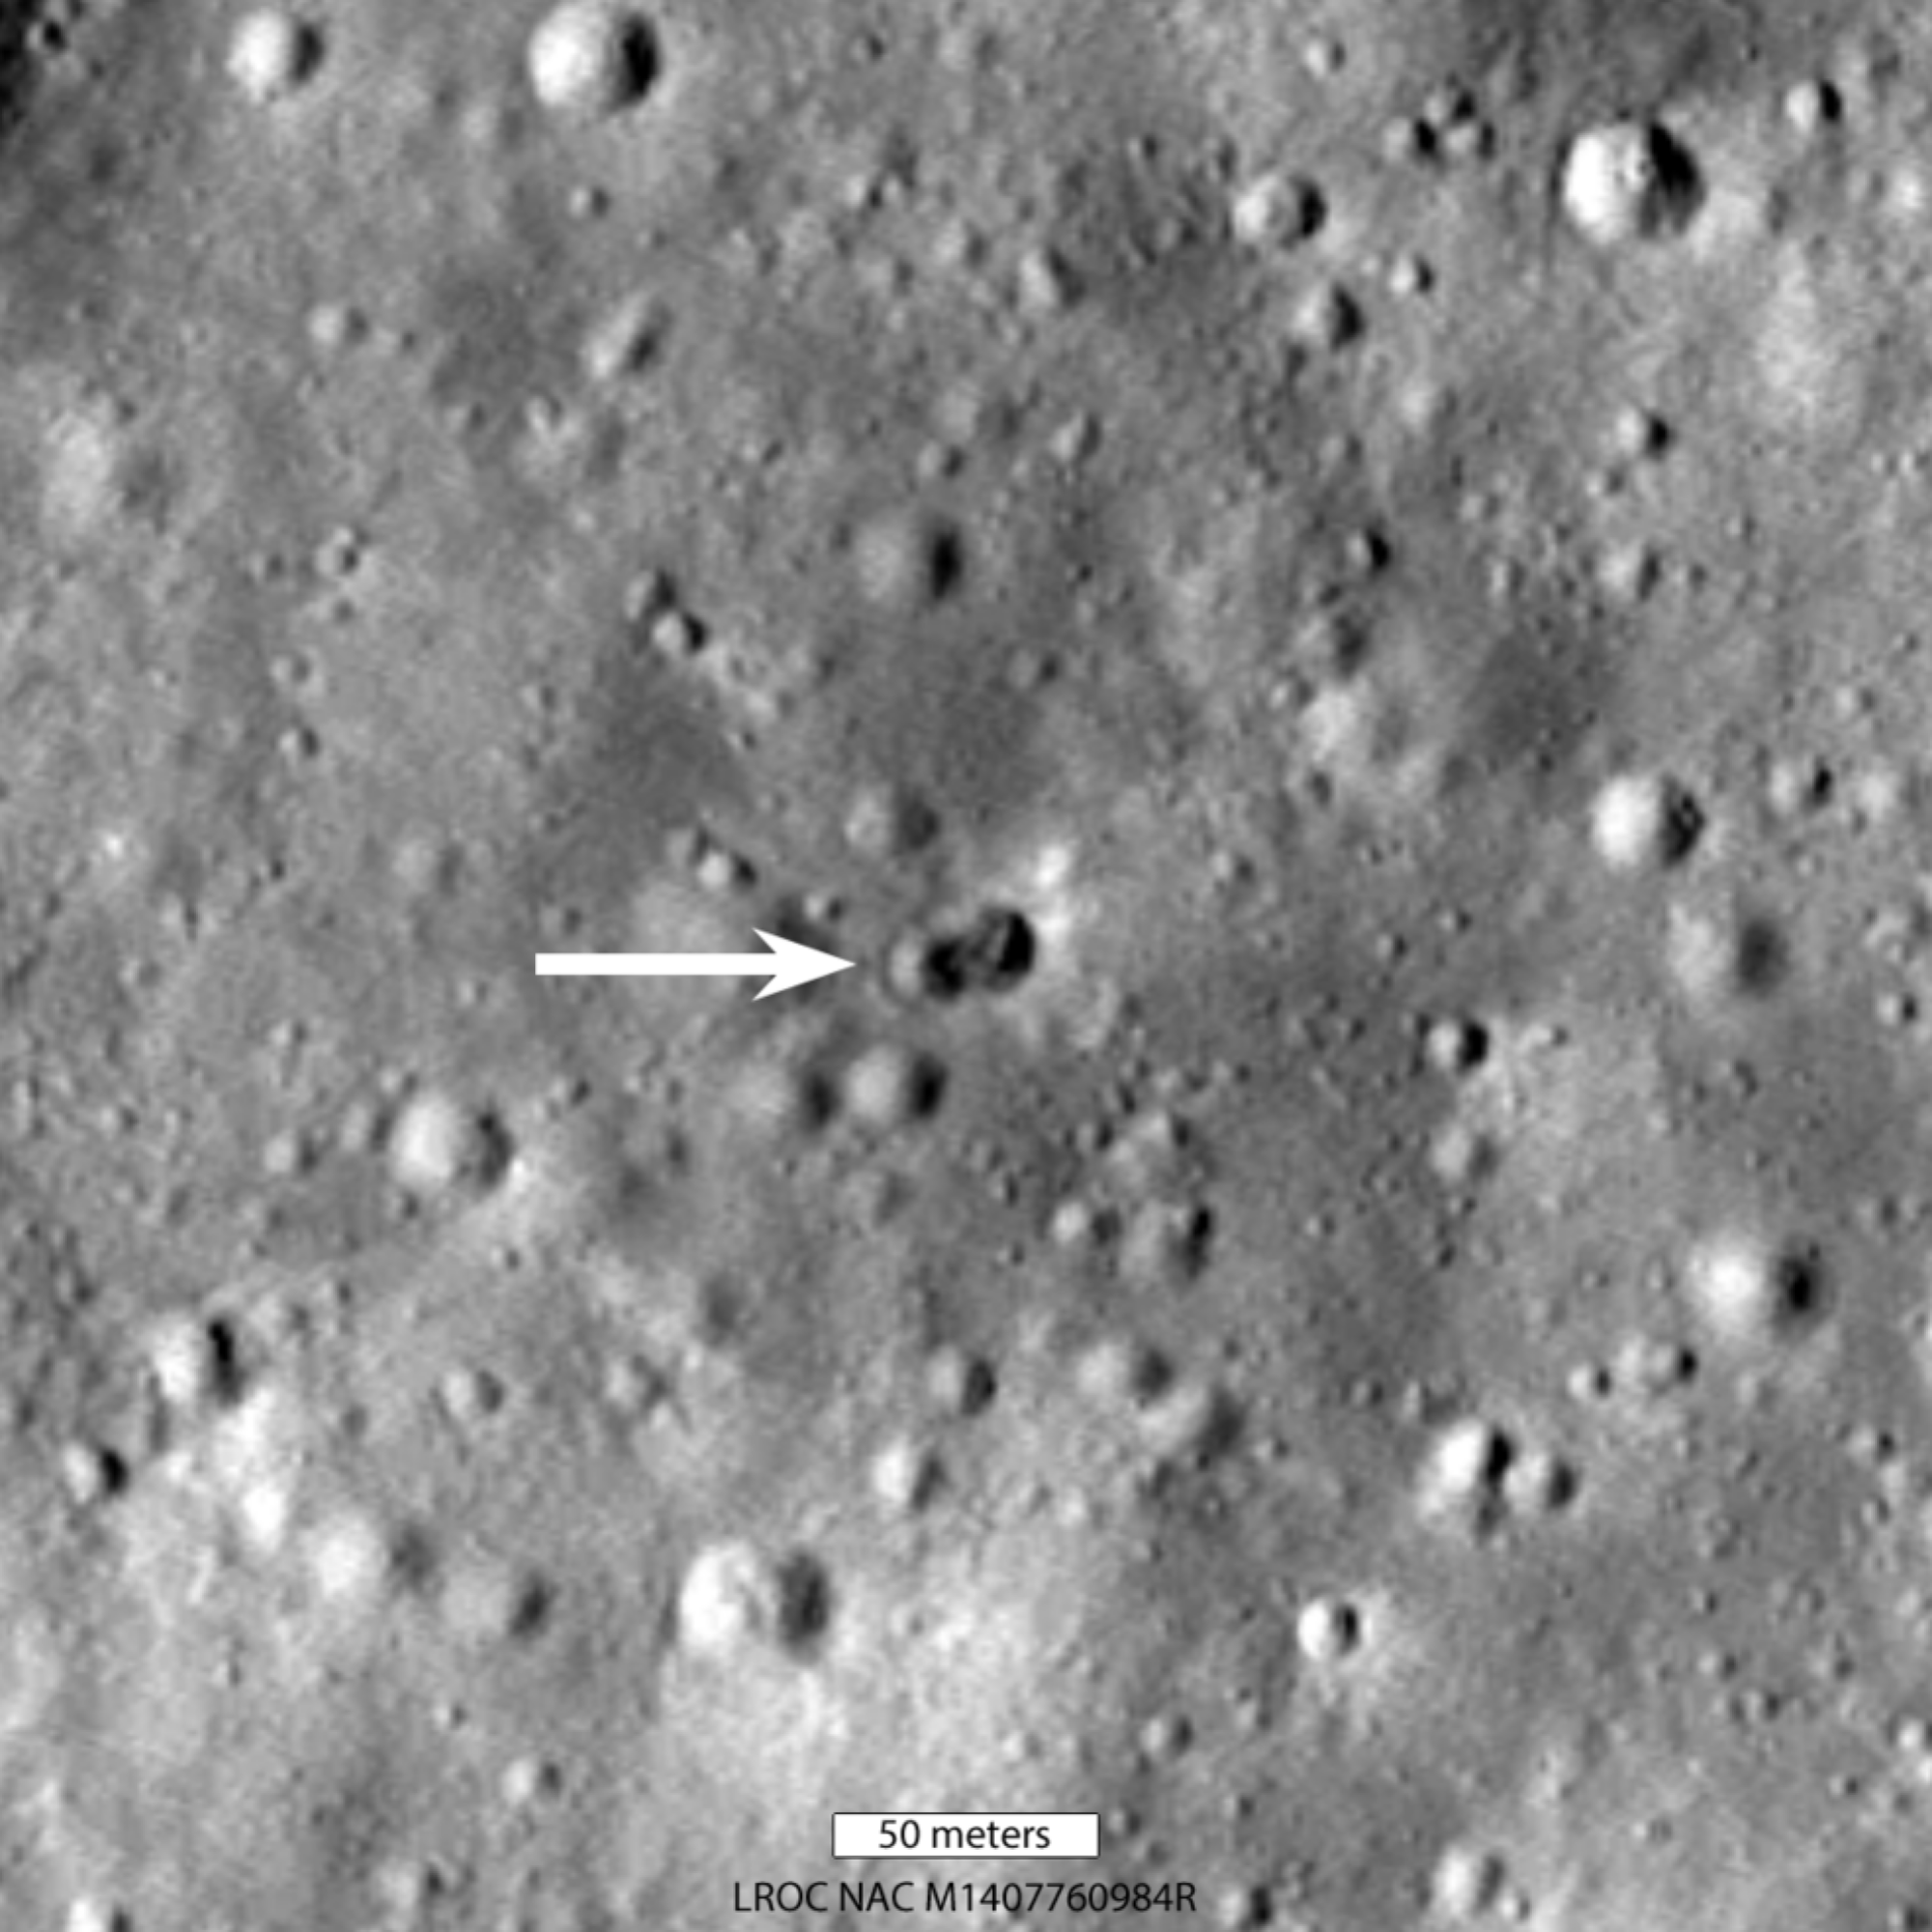 Un propulseur de fusée a percuté la lune le 4 mars, laissant un cratère sur la surface lunaire.